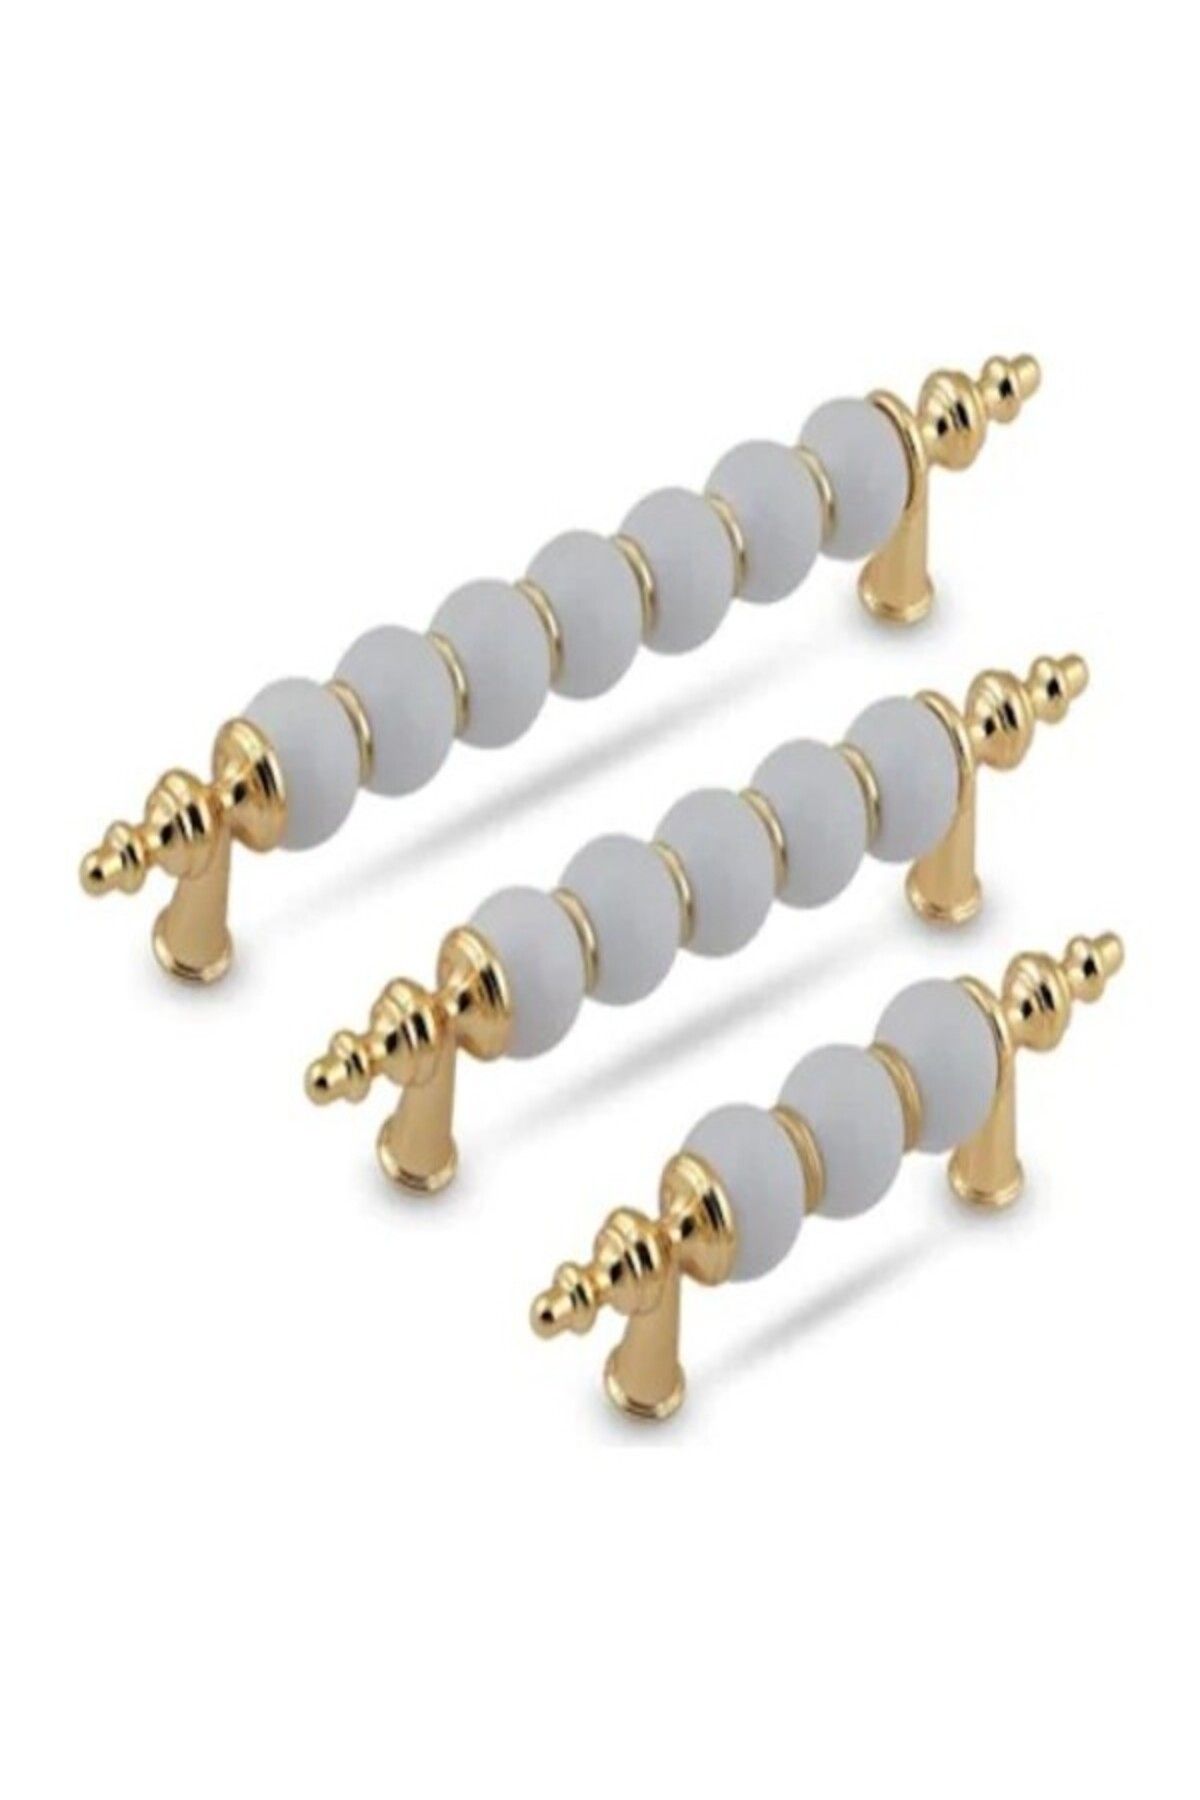 YAREN METAL Polimer Boncuk Lüks Modern Dolap Çekmece Kulpları (224 Mm )22,4 cm Altın Boncuk